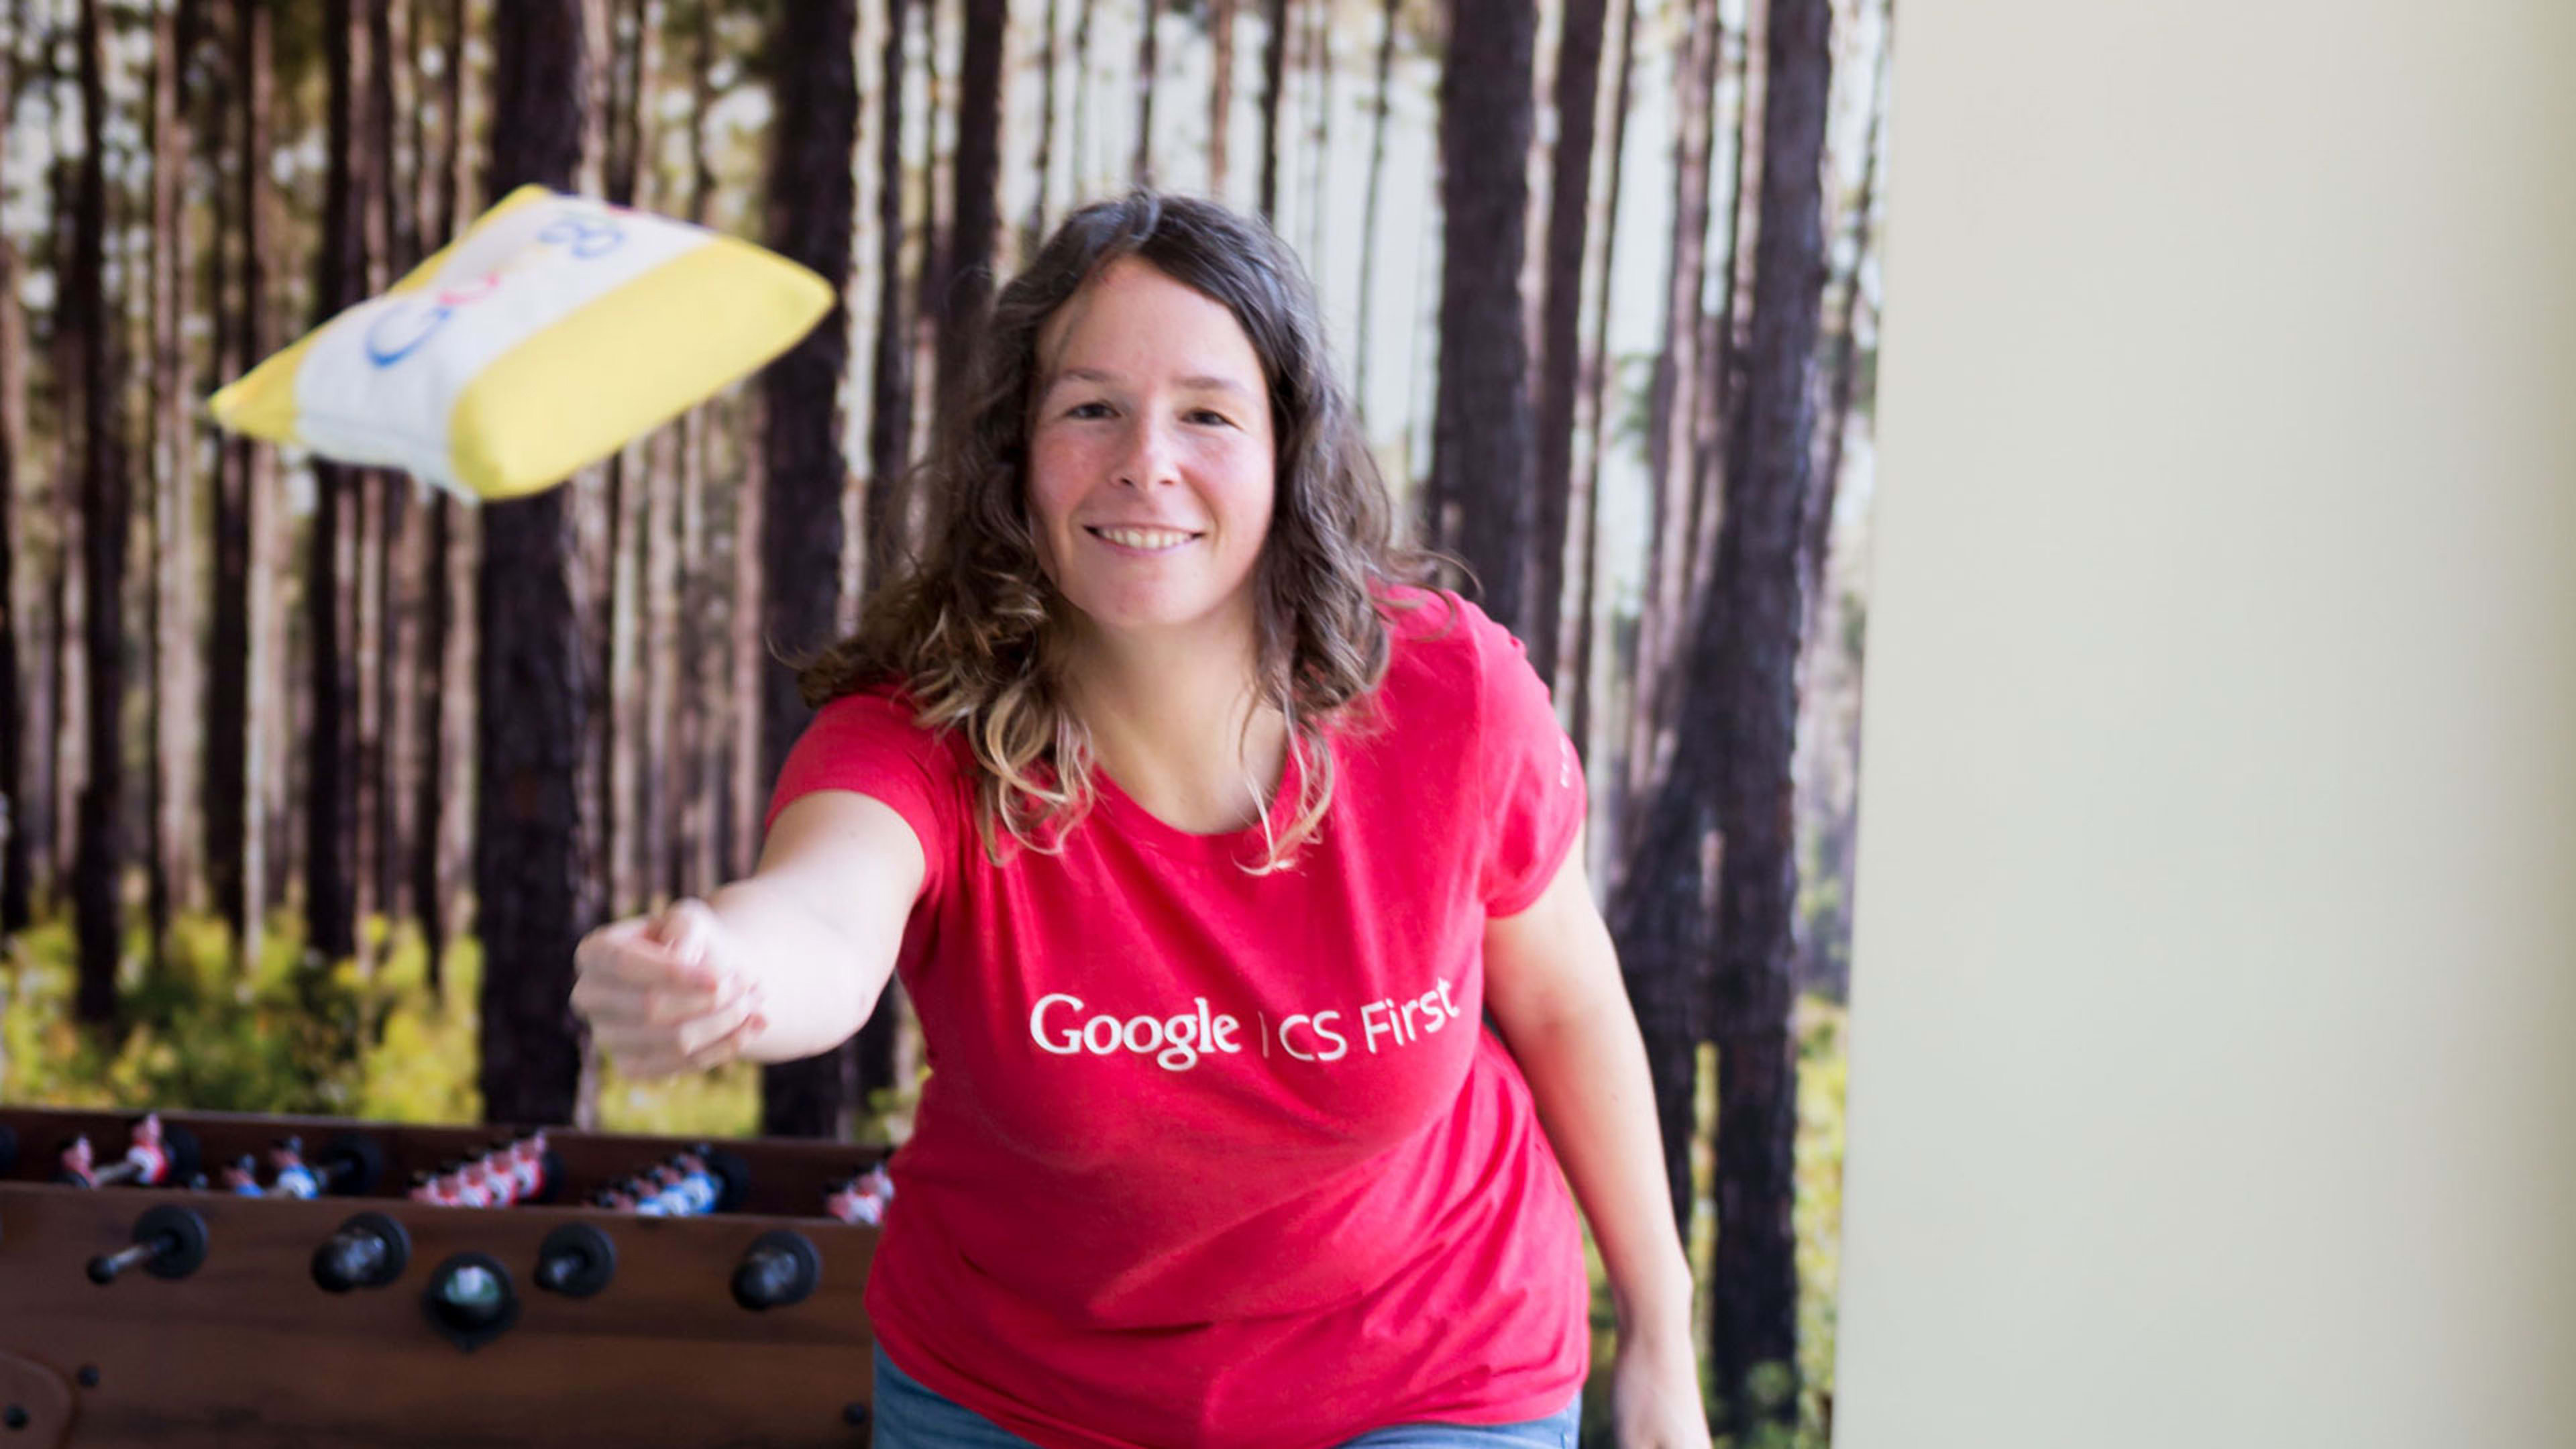 This Googler has helped 50,000 teachers train students in digital skills